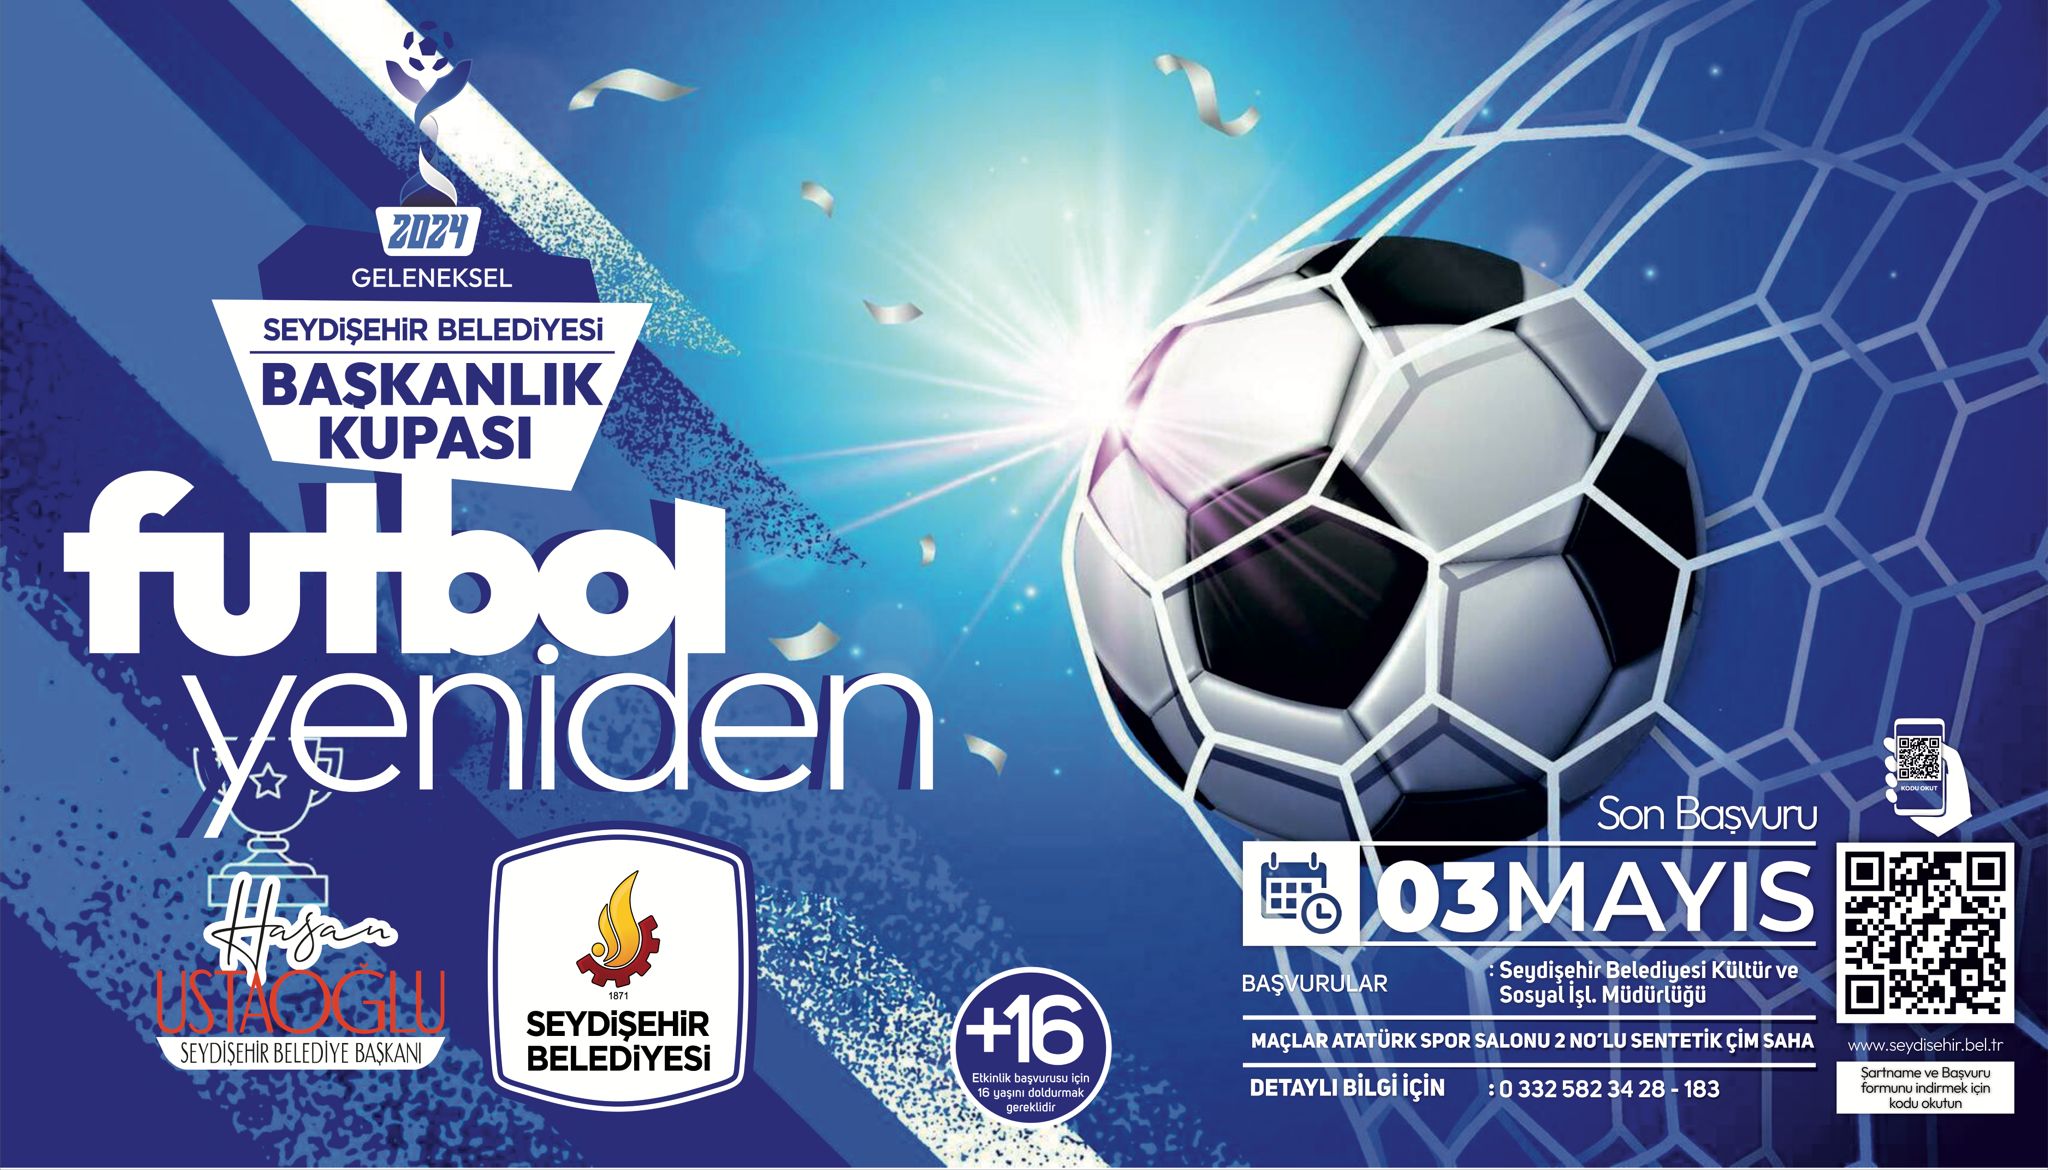 Seydişehir Belediyesi kupası futbol turnuvası başlıyor